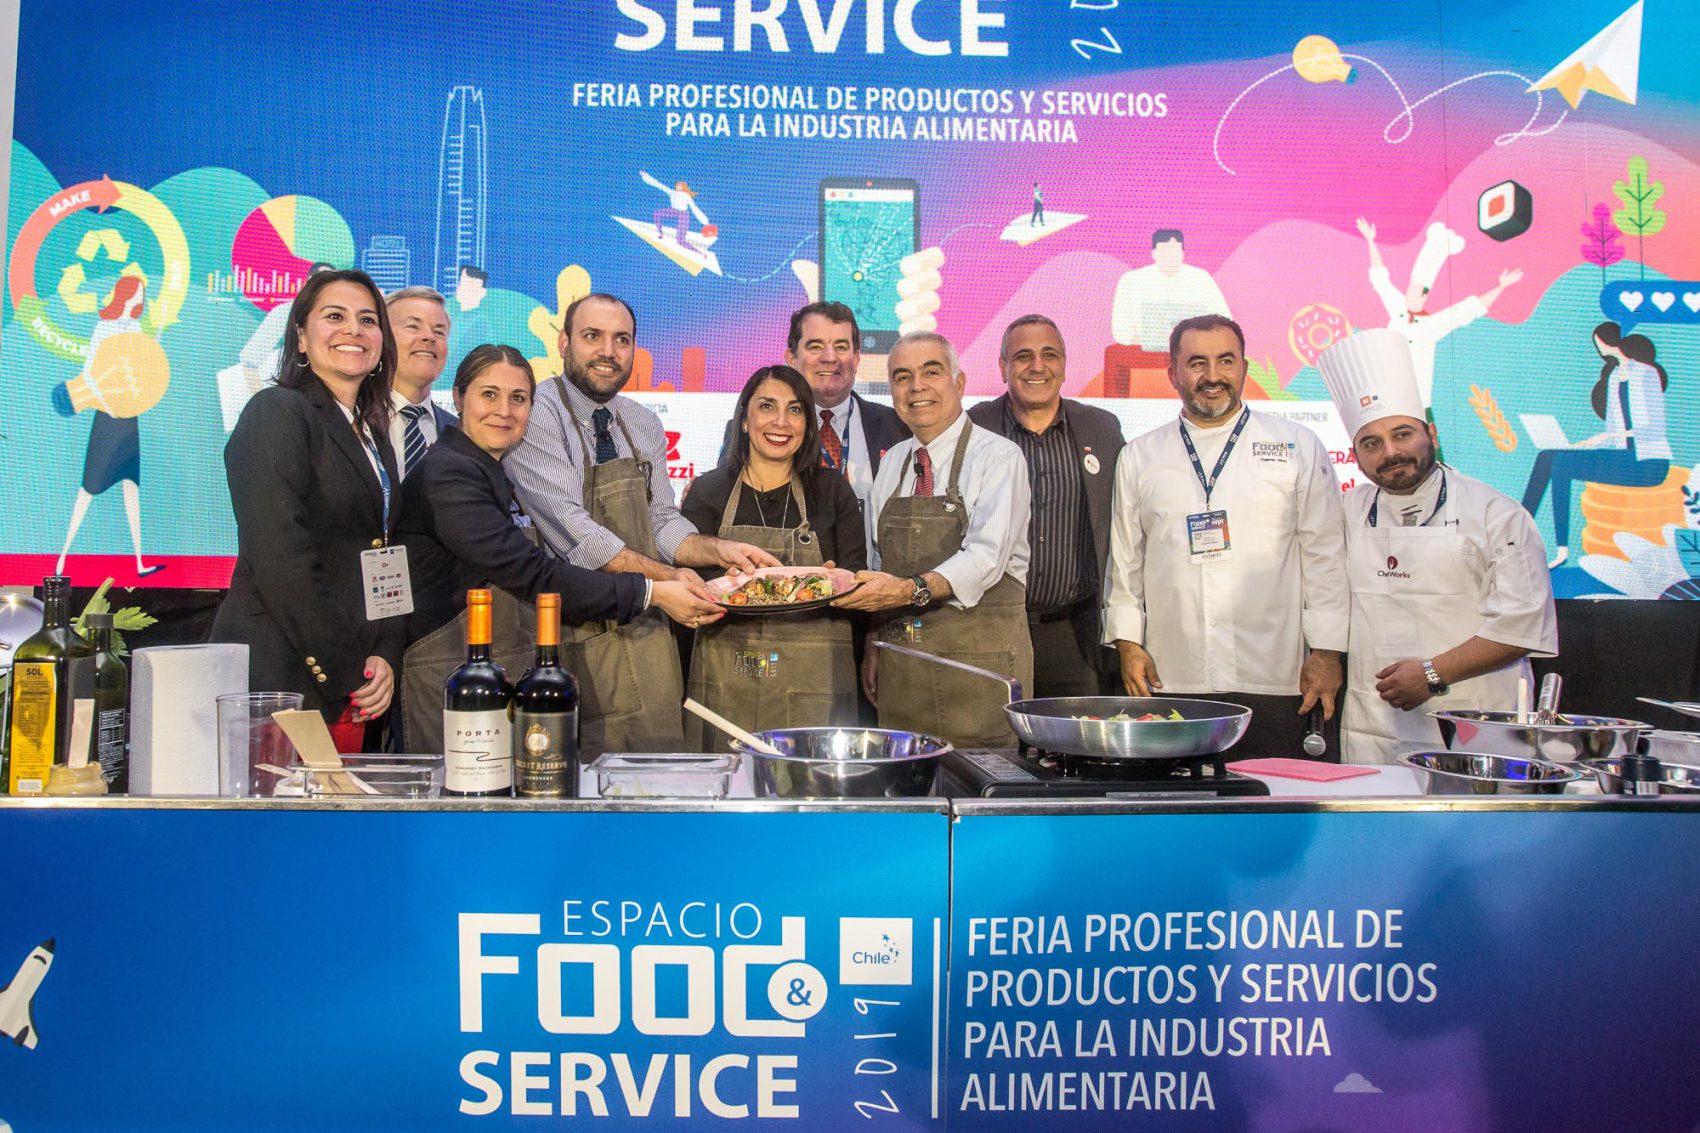 Espacio Food & Service convoca a más de 25 mil profesionales de la industria con Estados Unidos como principal invitado